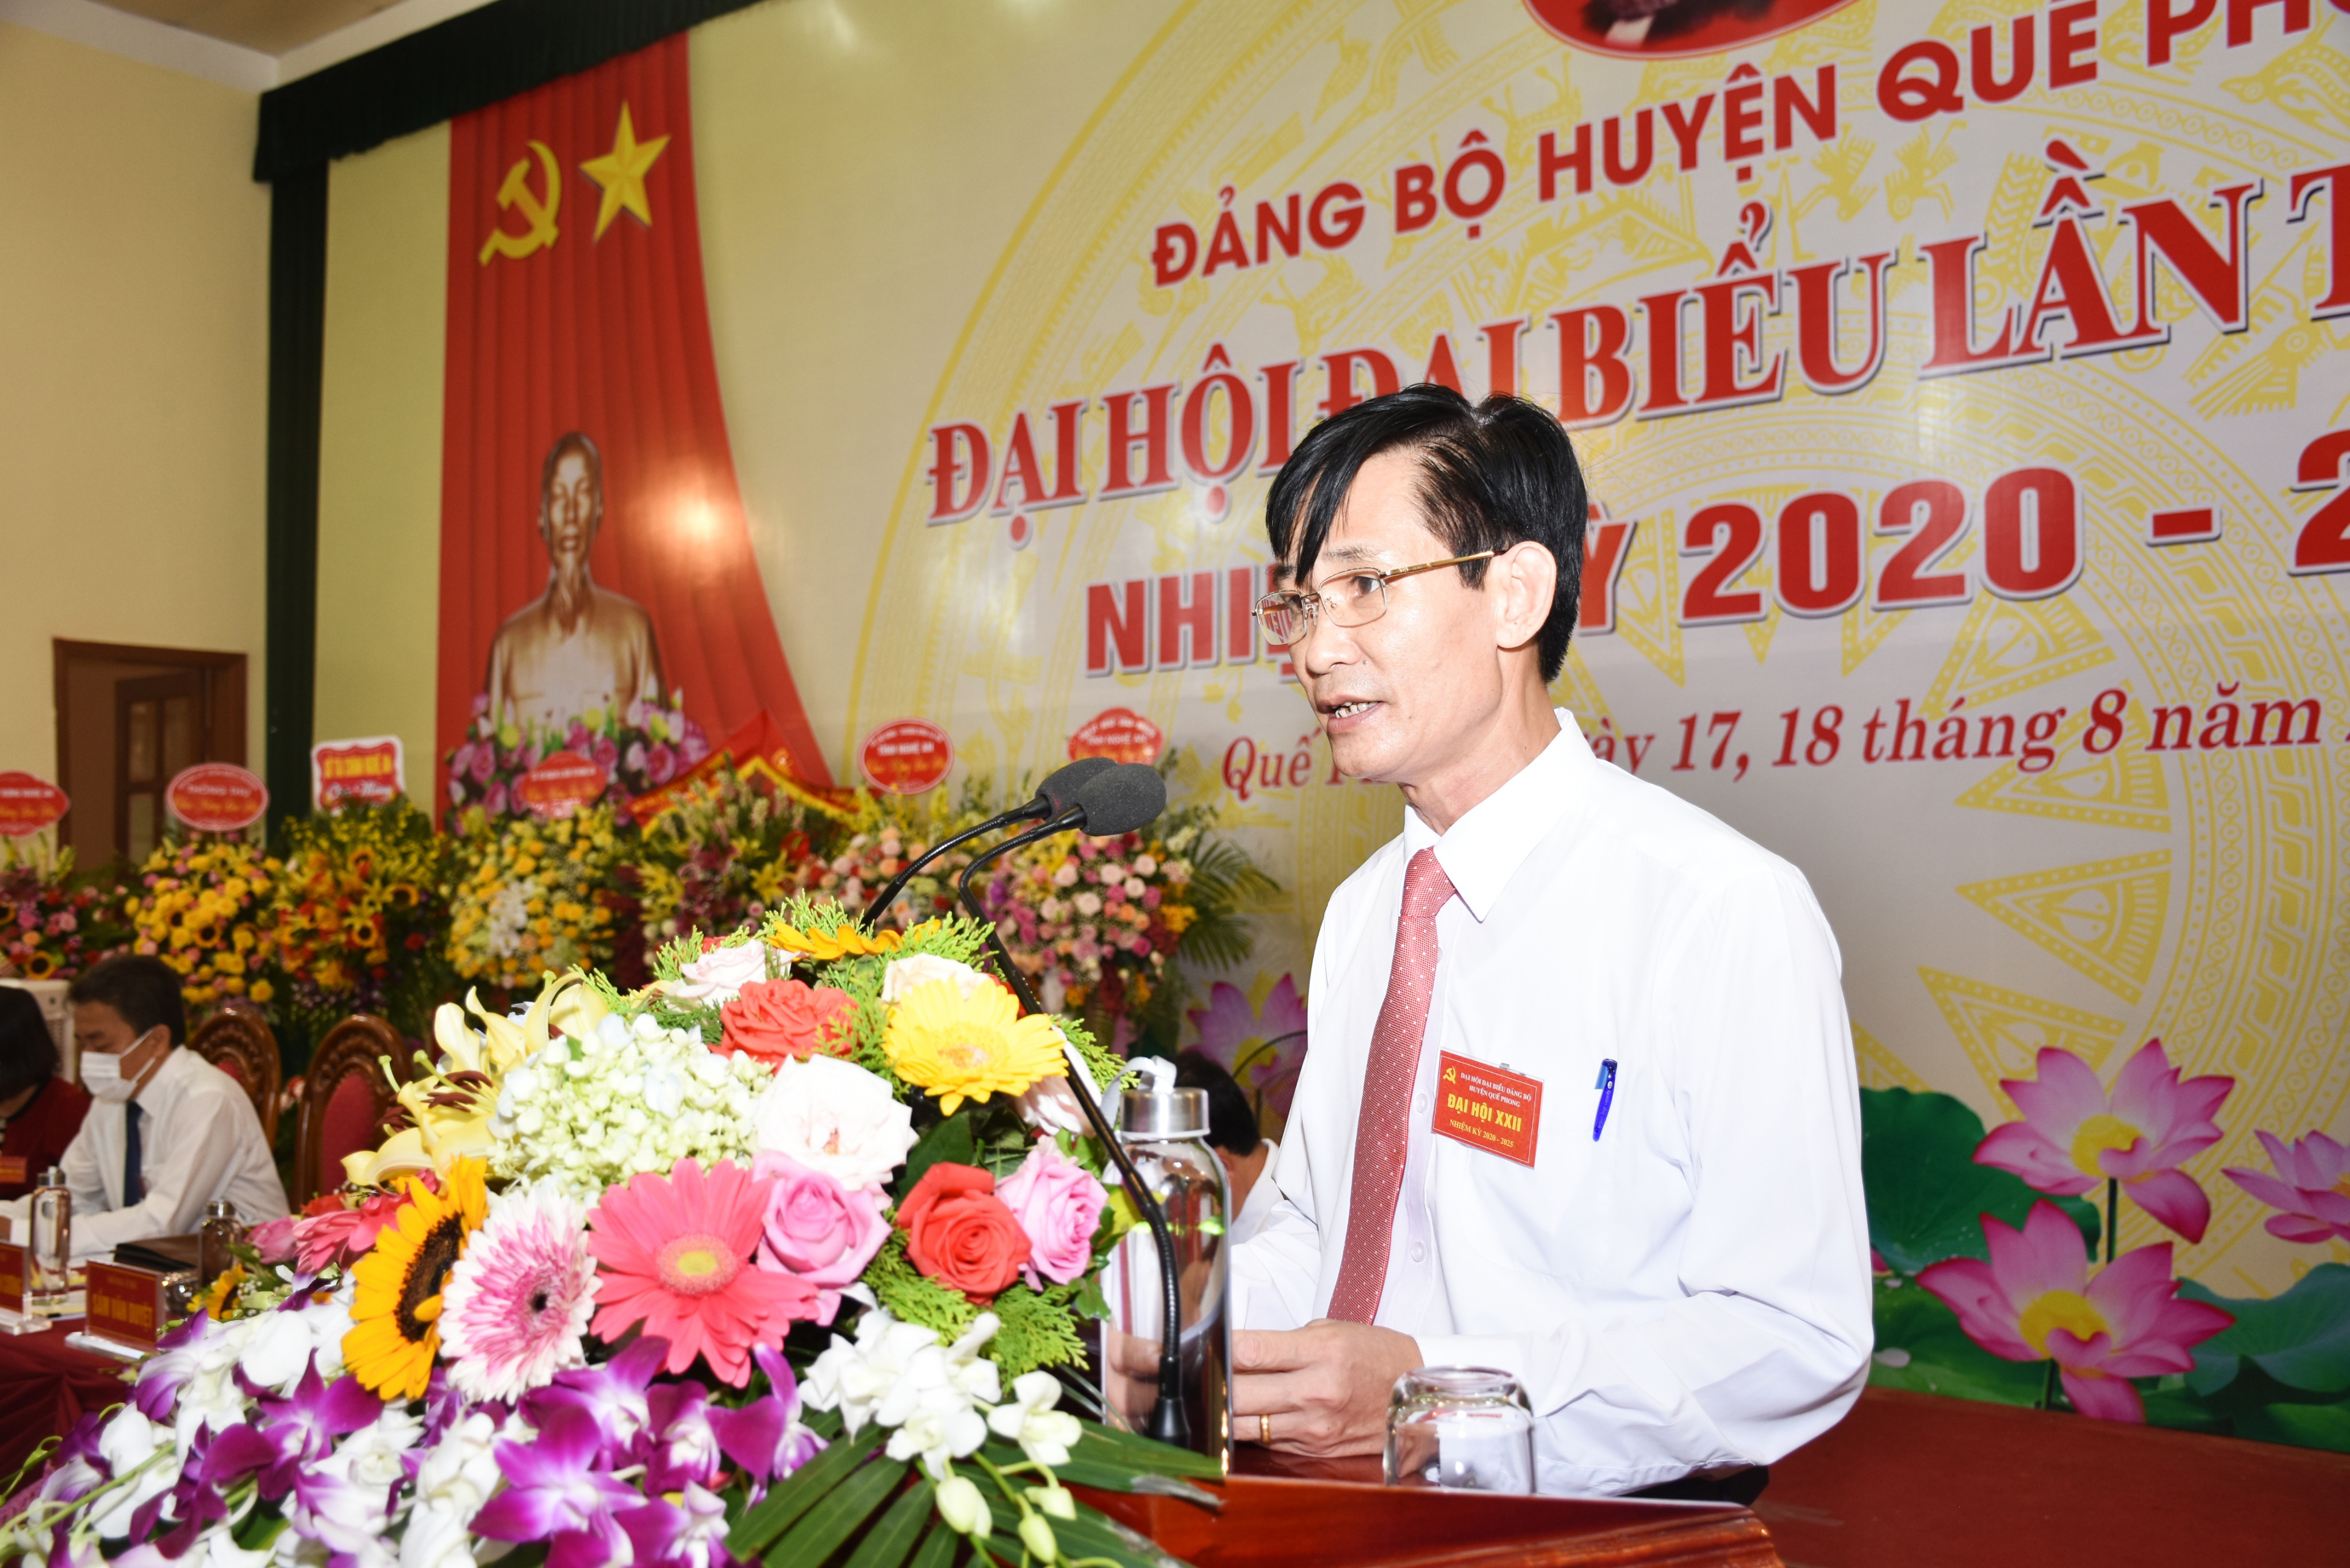 Đồng chí Trương Minh Cương - Bí thư Huyện ủy Quế nhiệm kỳ 2020-2025 phát biểu bế mạc Đại hội. Ảnh: Thanh Lê